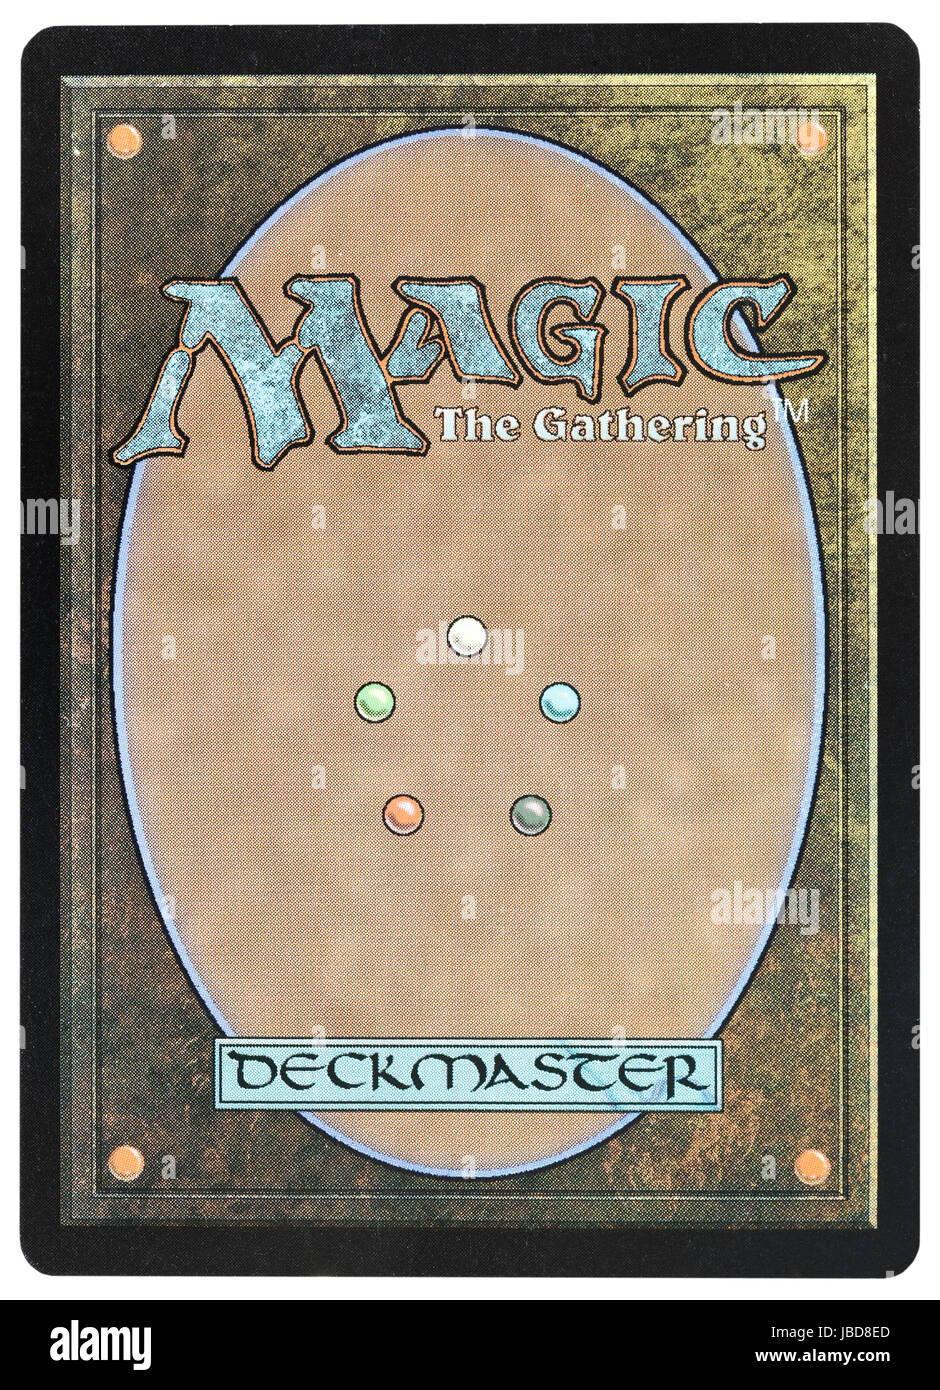 Moskau, Russland - 24. März 2013: Magic: The Versammlungen Karte wieder traditionelles Design. Das Spiel wurde von Richard Garfield erstellt und erstmals veröffentlicht im Jahr 1993 von den Zauberern der Küste. Stockfoto